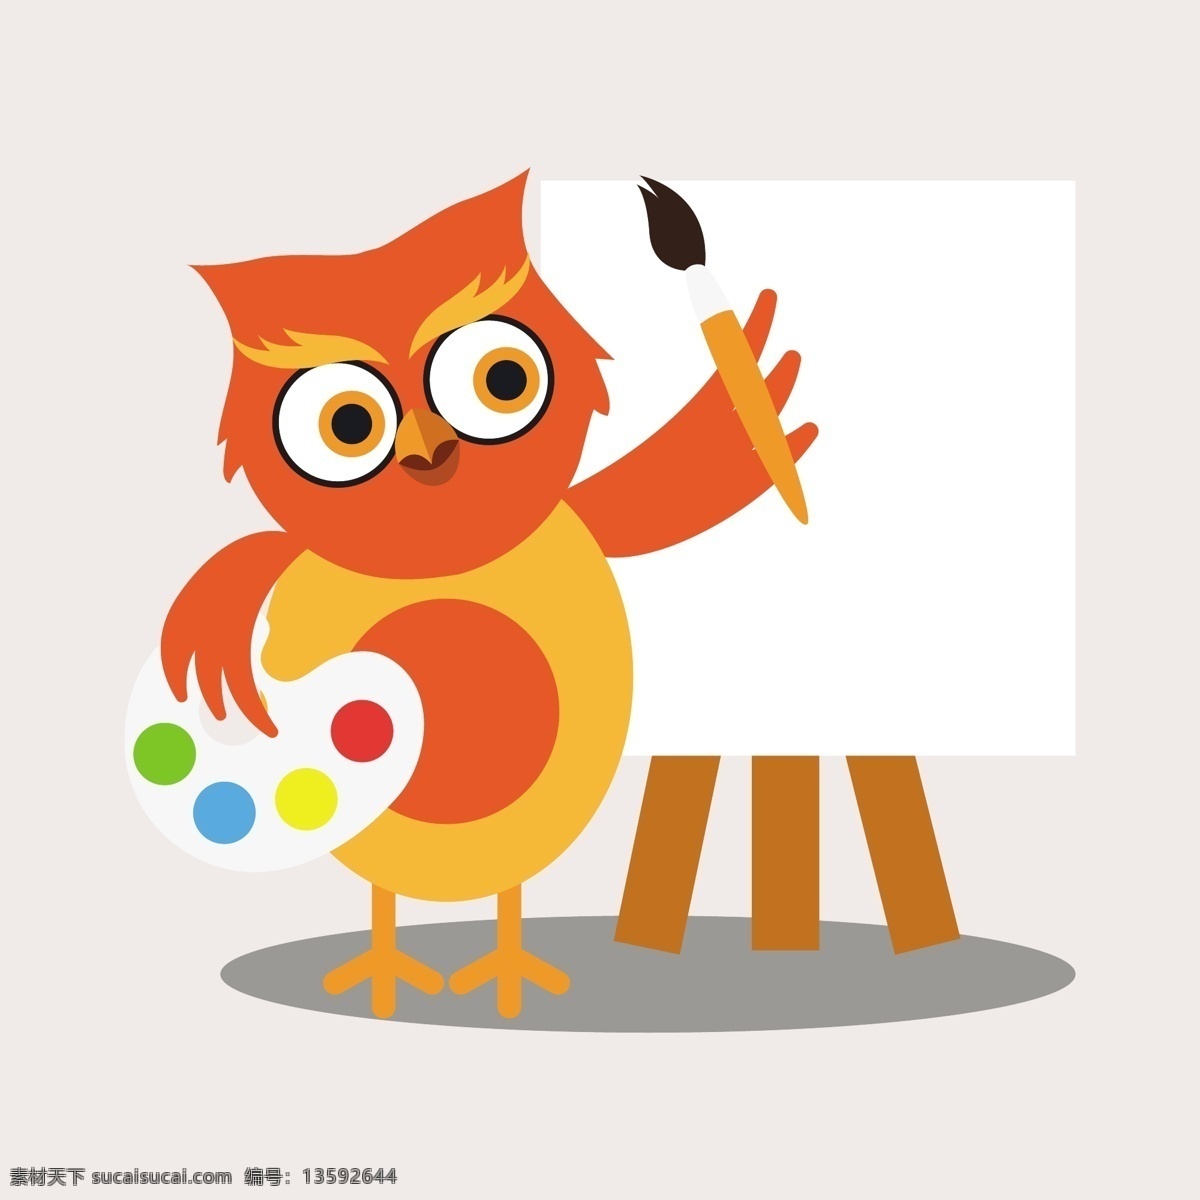 可爱 猫头鹰 卡通 人物 画家 爱 性格 鸟 动物 油漆 刷子 五颜六色 宠物 鸟类 绘画 画笔 可爱的动物 艺术家 爱鸟